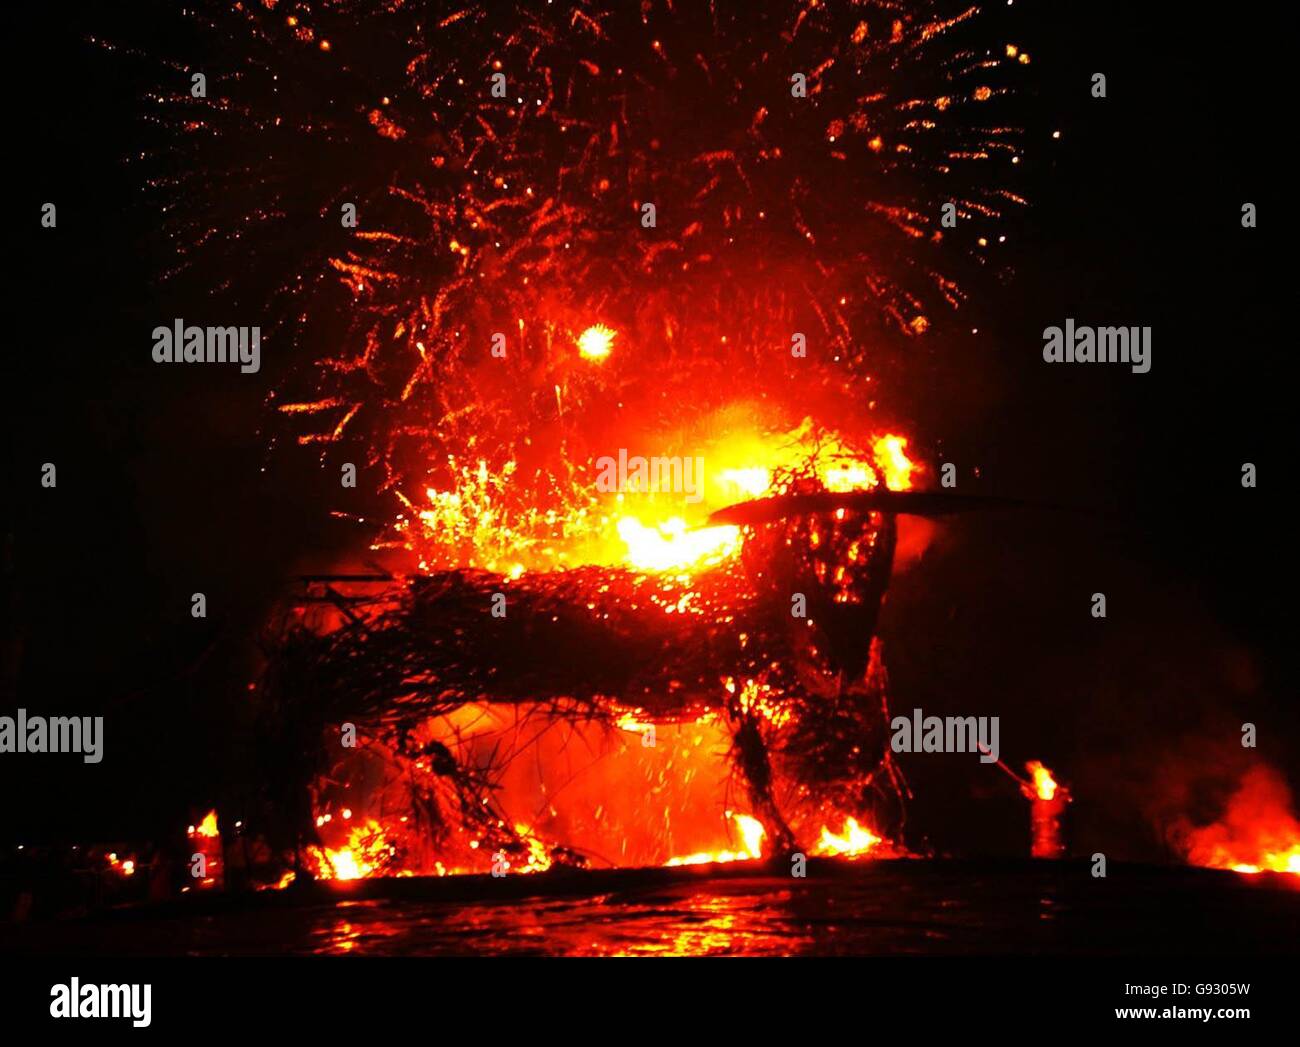 S Hogmanay festeggiamenti, un vimini alto 22ft toro catalano è stato bruciato sulla cima di Calton Hill. Foto Stock